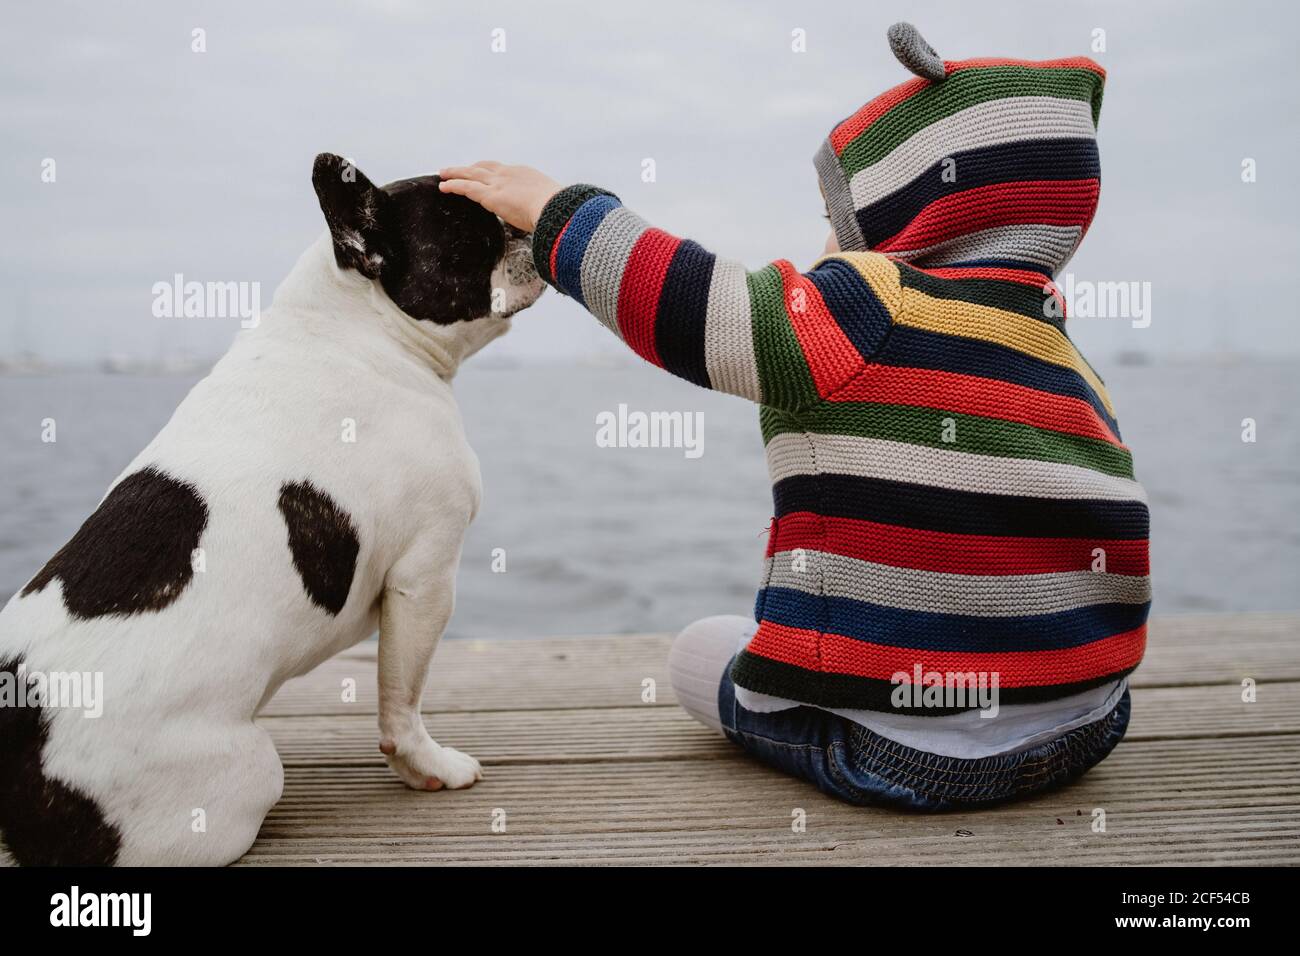 Vue arrière d'un enfant méconnaissable dans une veste rayée à pois Bulldog français assis sur une jetée près de la mer Banque D'Images